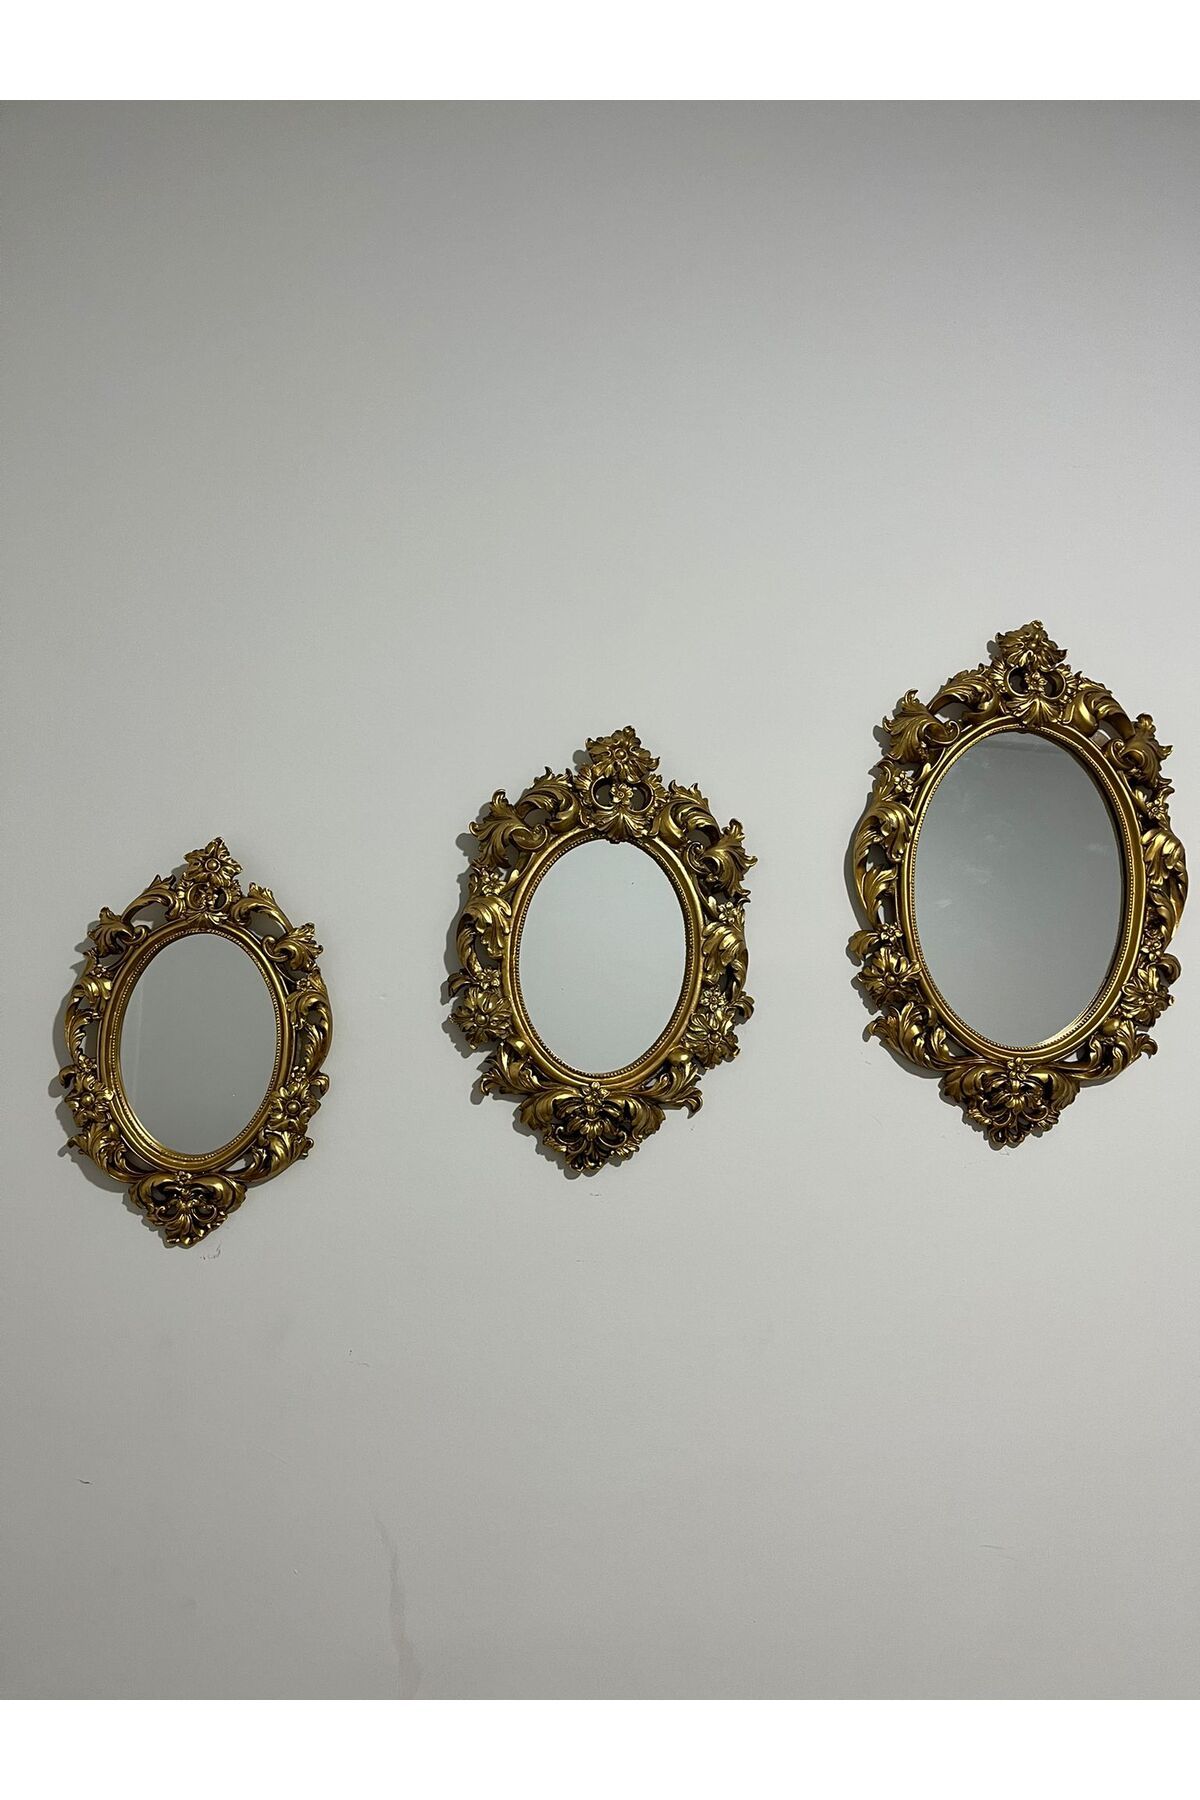 NARART Şık Klasik Hediyelik Üçlü Ayna